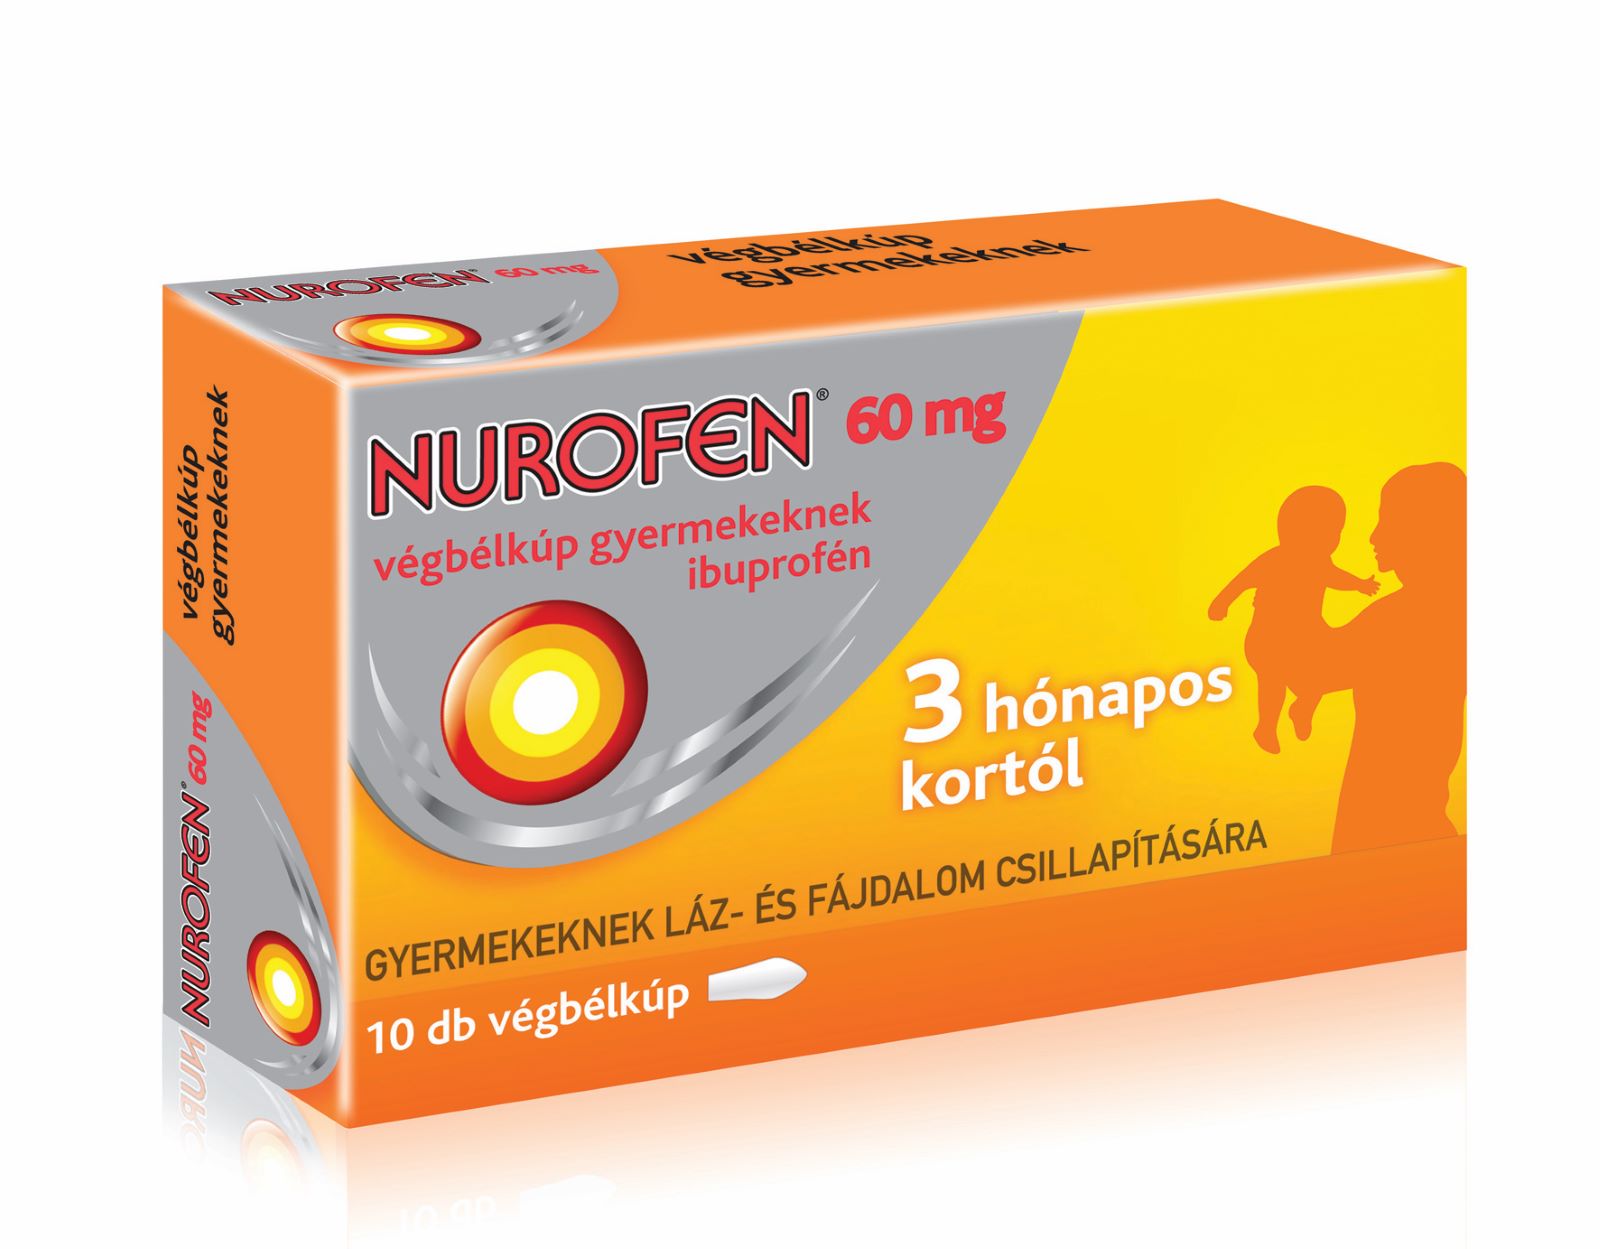 Nurofen 60 mg végbélkúp gyermekeknek